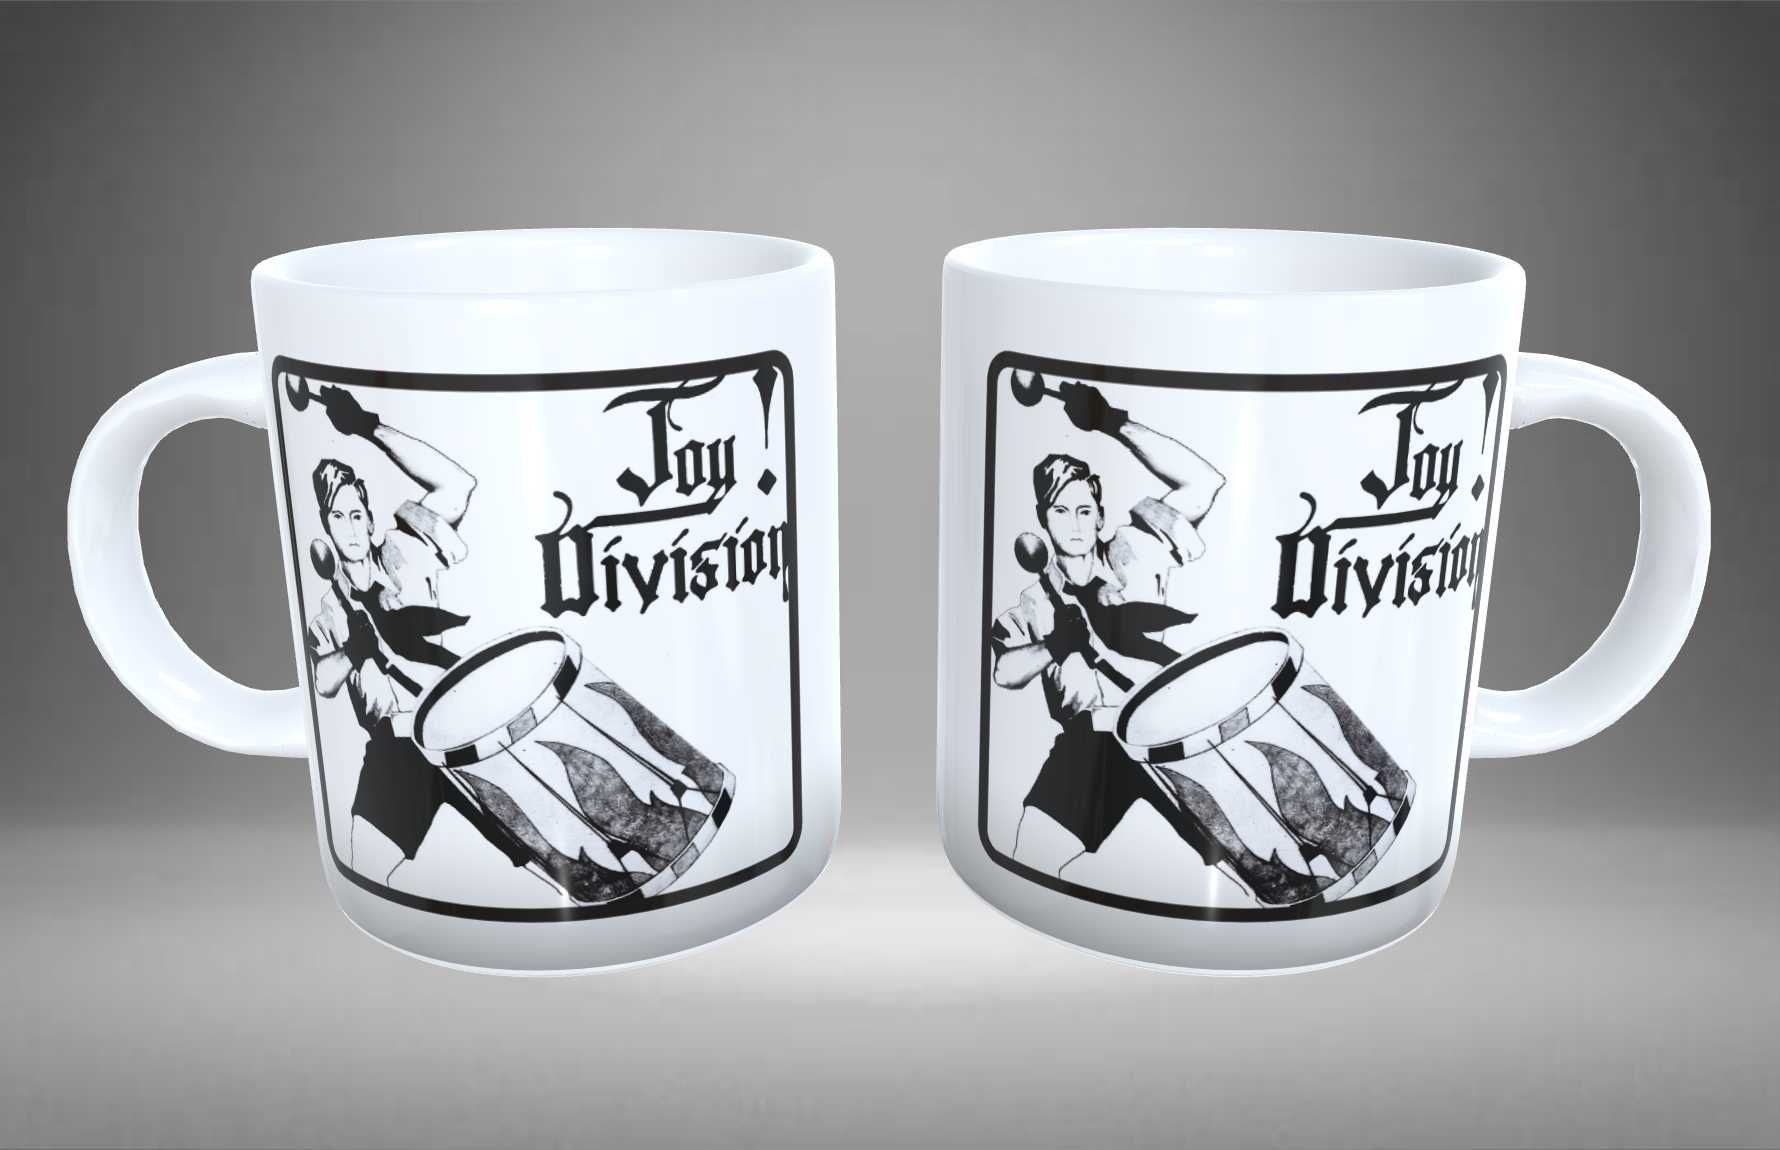 Canecas Joy Division.